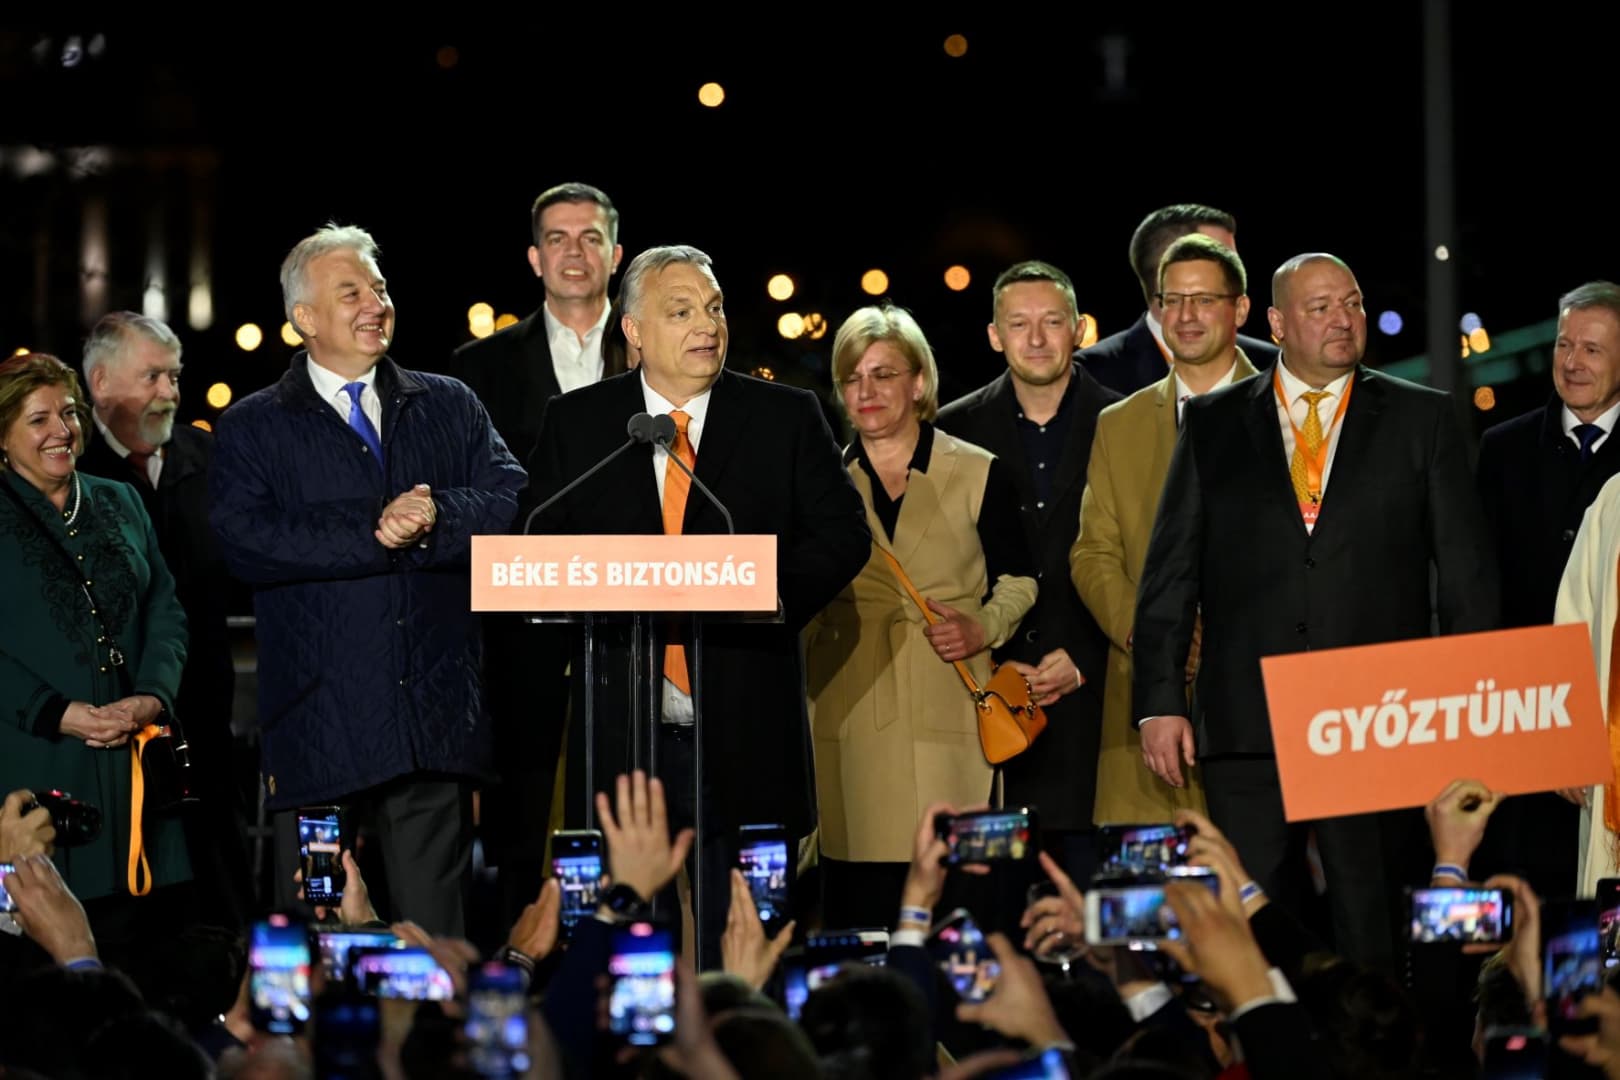 Újra kétharmados Fidesz-többség lesz az Országgyűlésben - magyarországi választási eredmények – PERCRŐL PERCRE